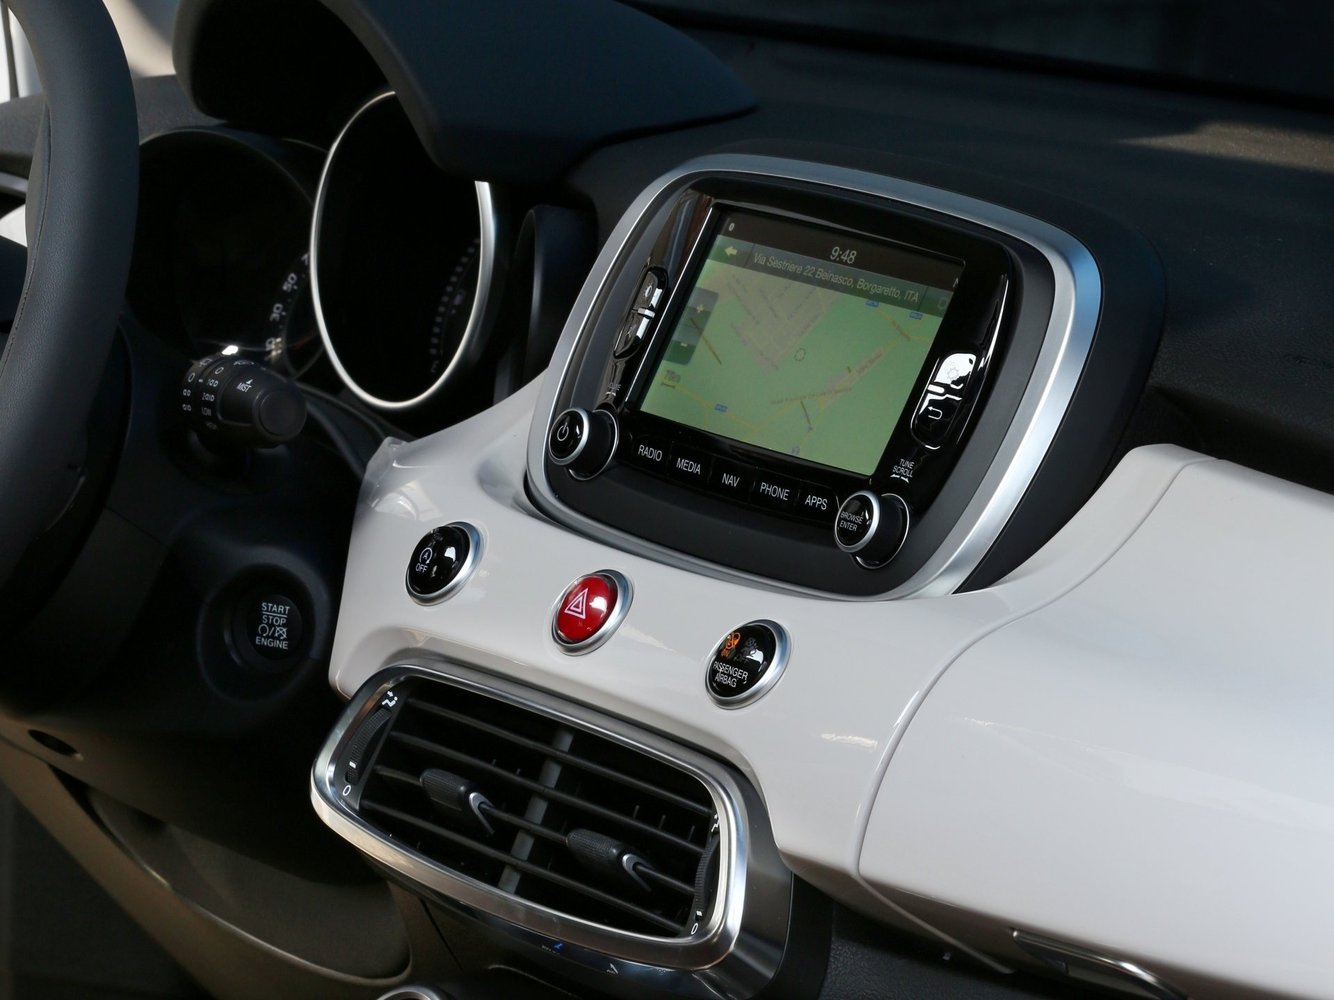 кроссовер Fiat 500X 2014 - 2016г выпуска модификация 1.6 MT (110 л.с.)